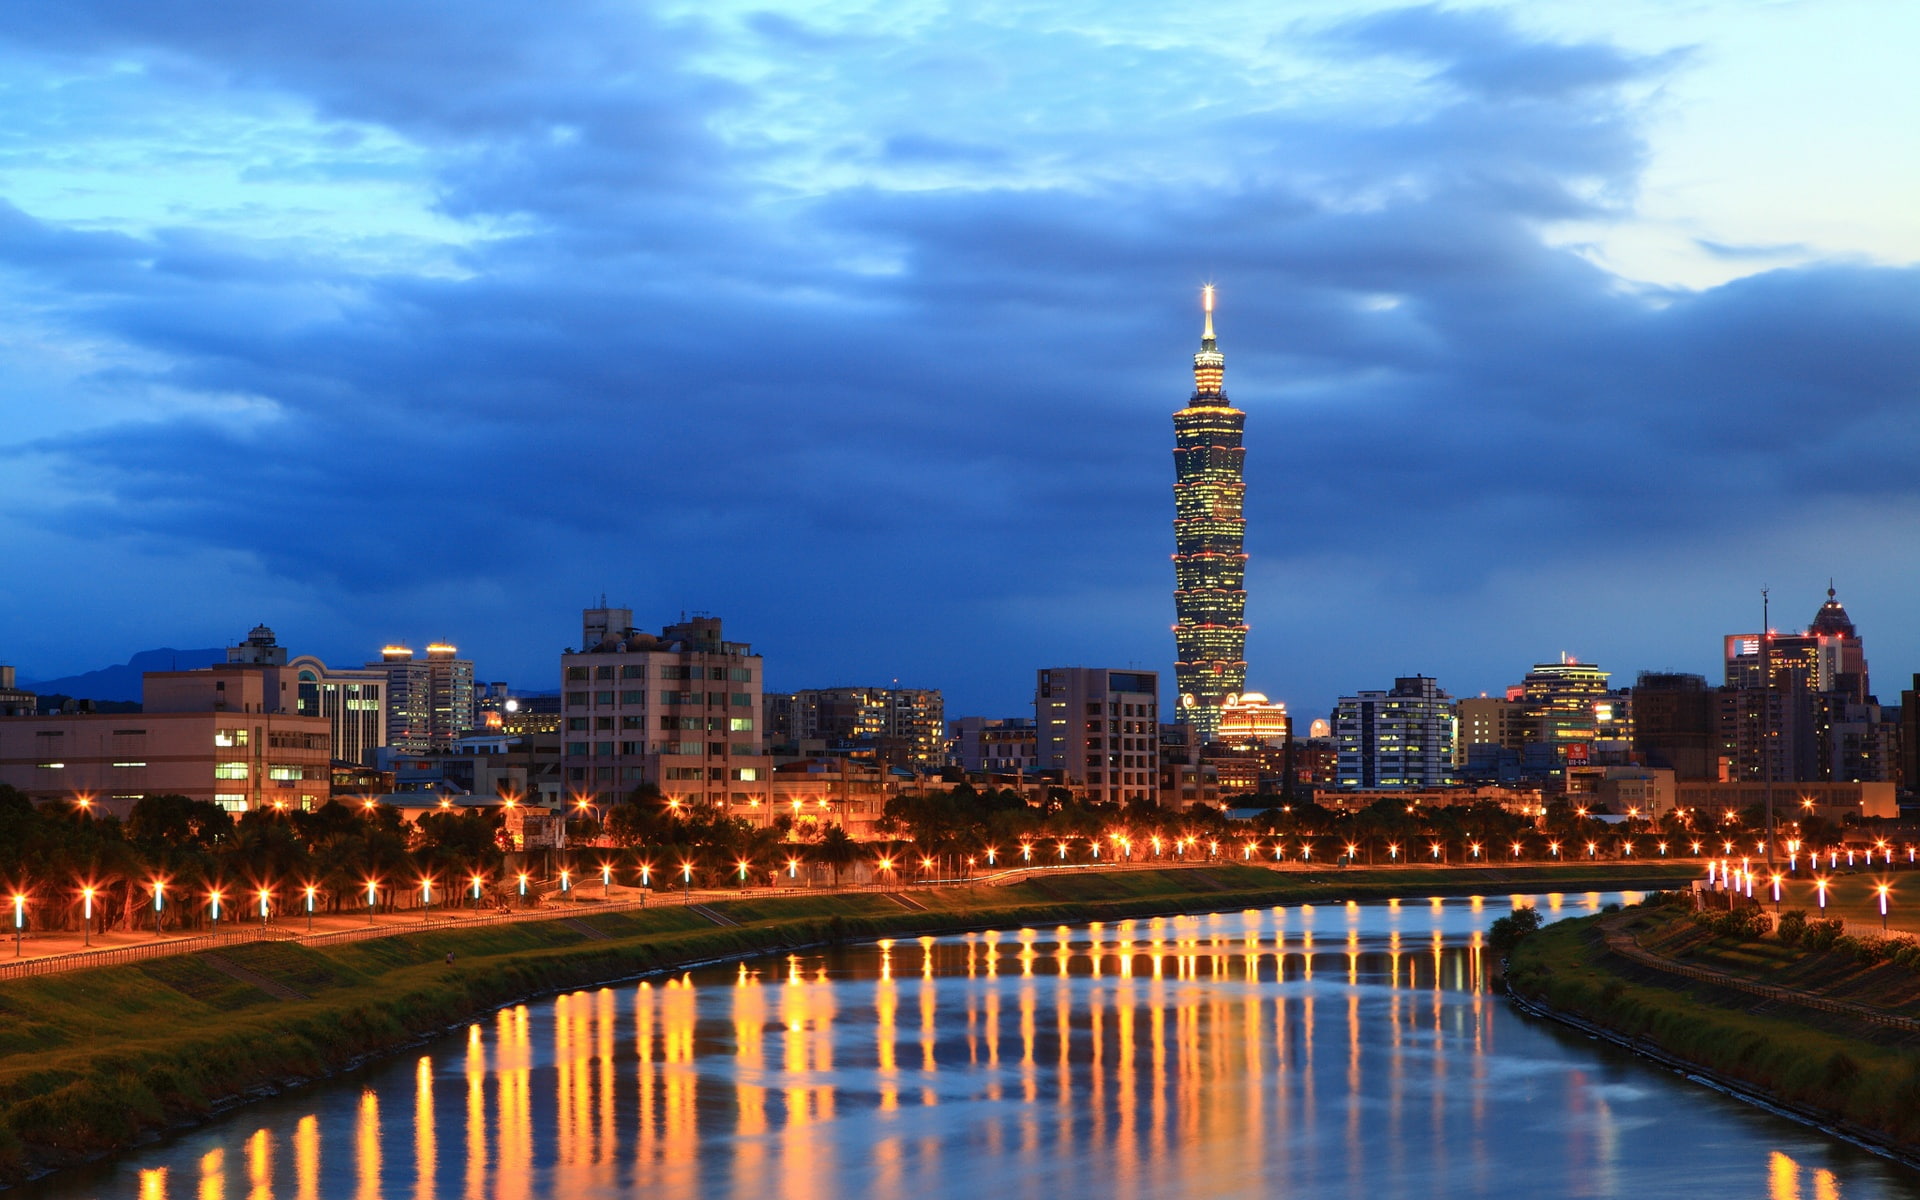 City night of Taipei, river, buildings, lights